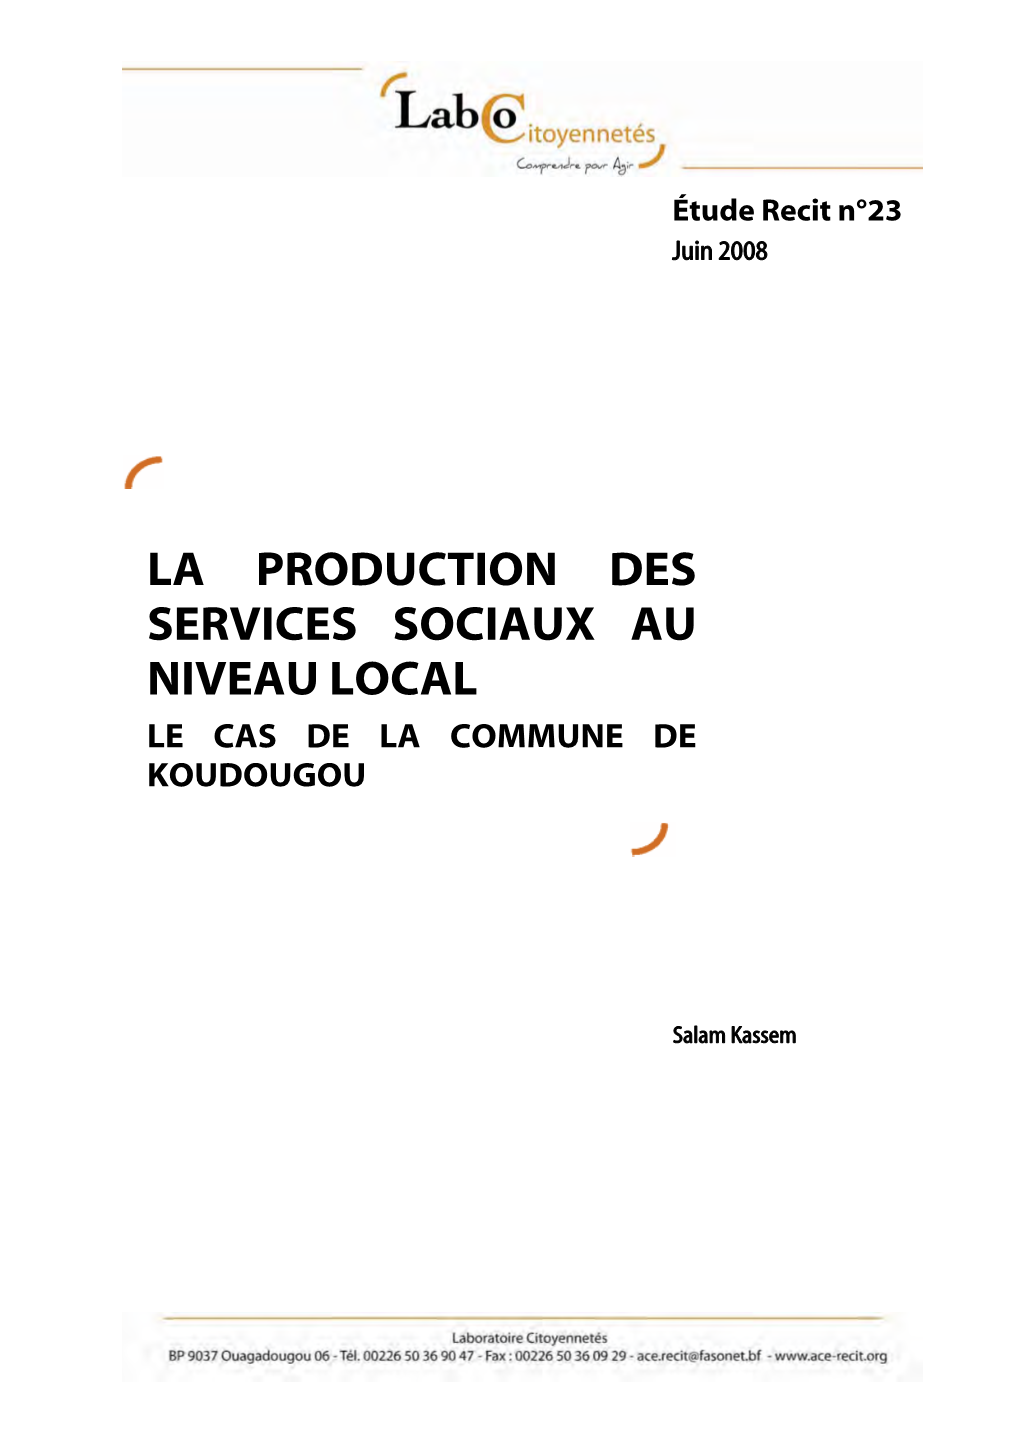 La Production Des Services Sociaux Au Niveau Local Le Cas De La Commune